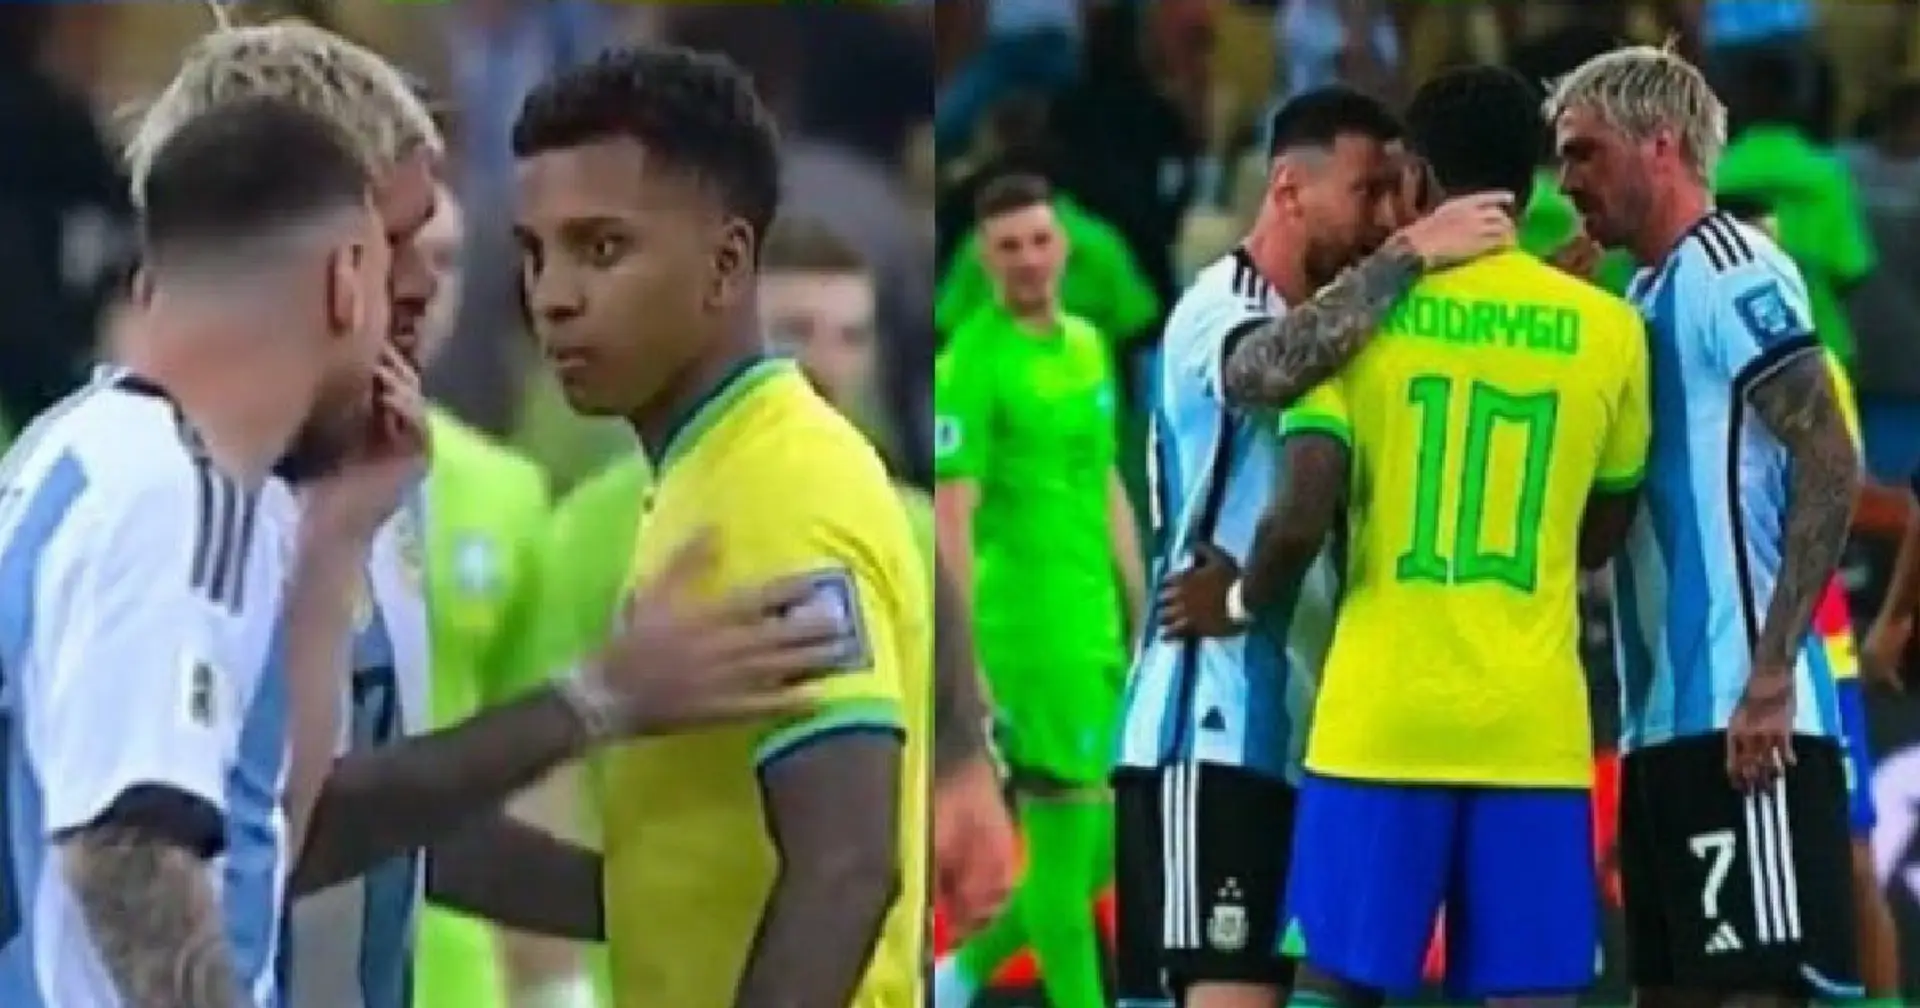 'Cuida tu boca, niño': cómo Messi silenció a Rodrygo después de una acalorada discusión